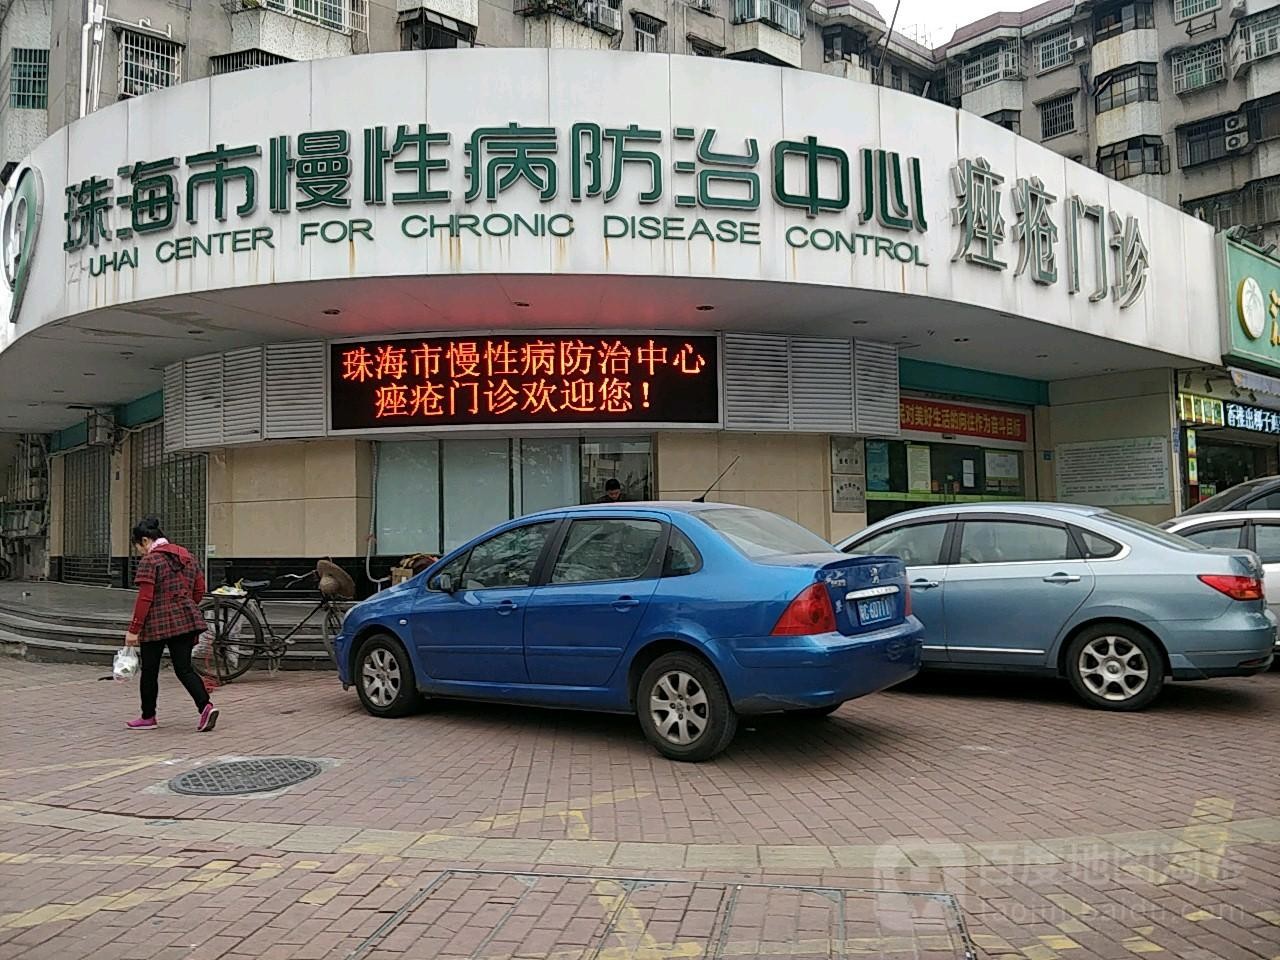 ultimo caso aziendale circa Il terzo ospedale di Zhuhai